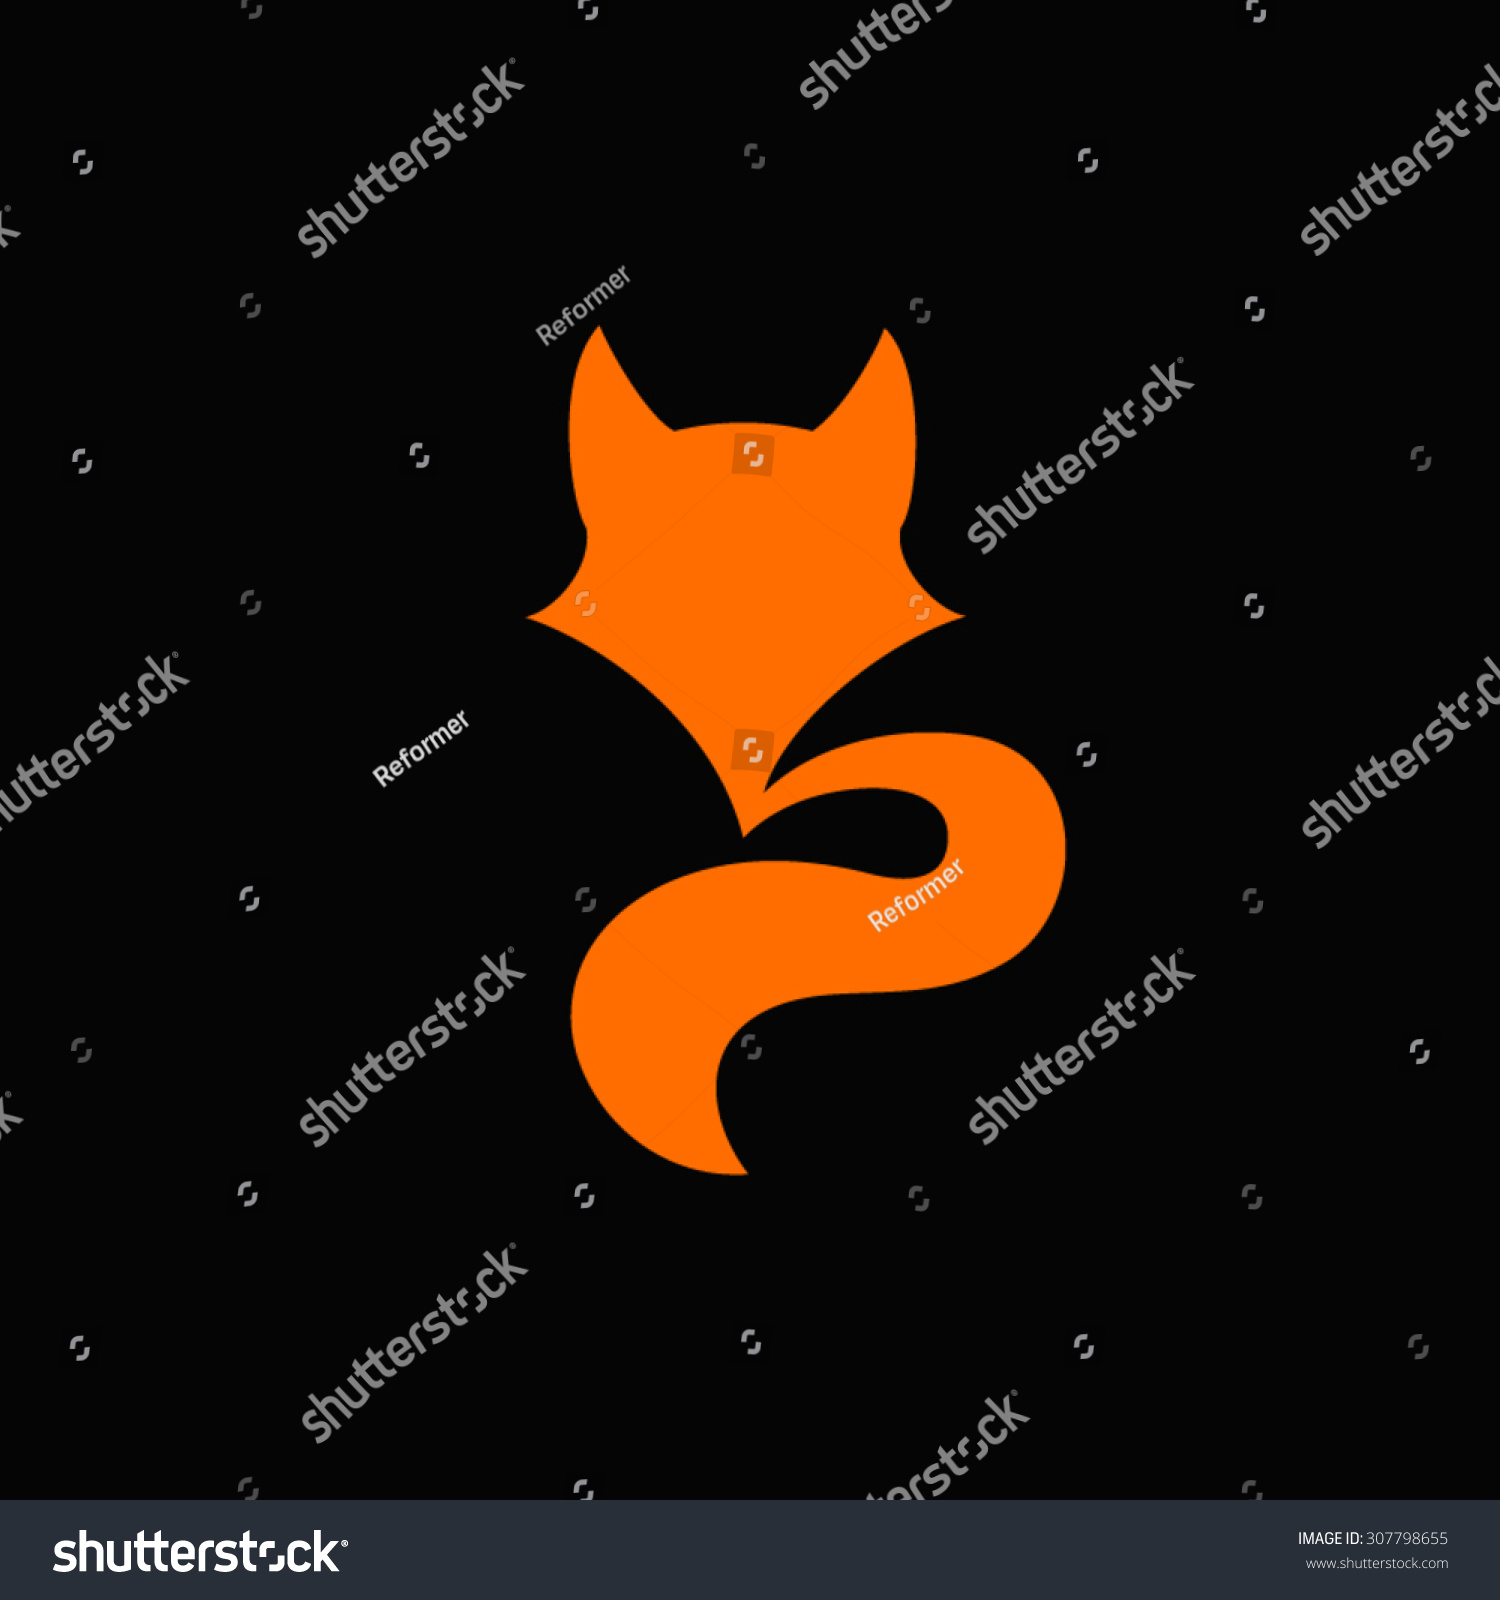 Vector Fox Logo - 307798655 : Shutterstock